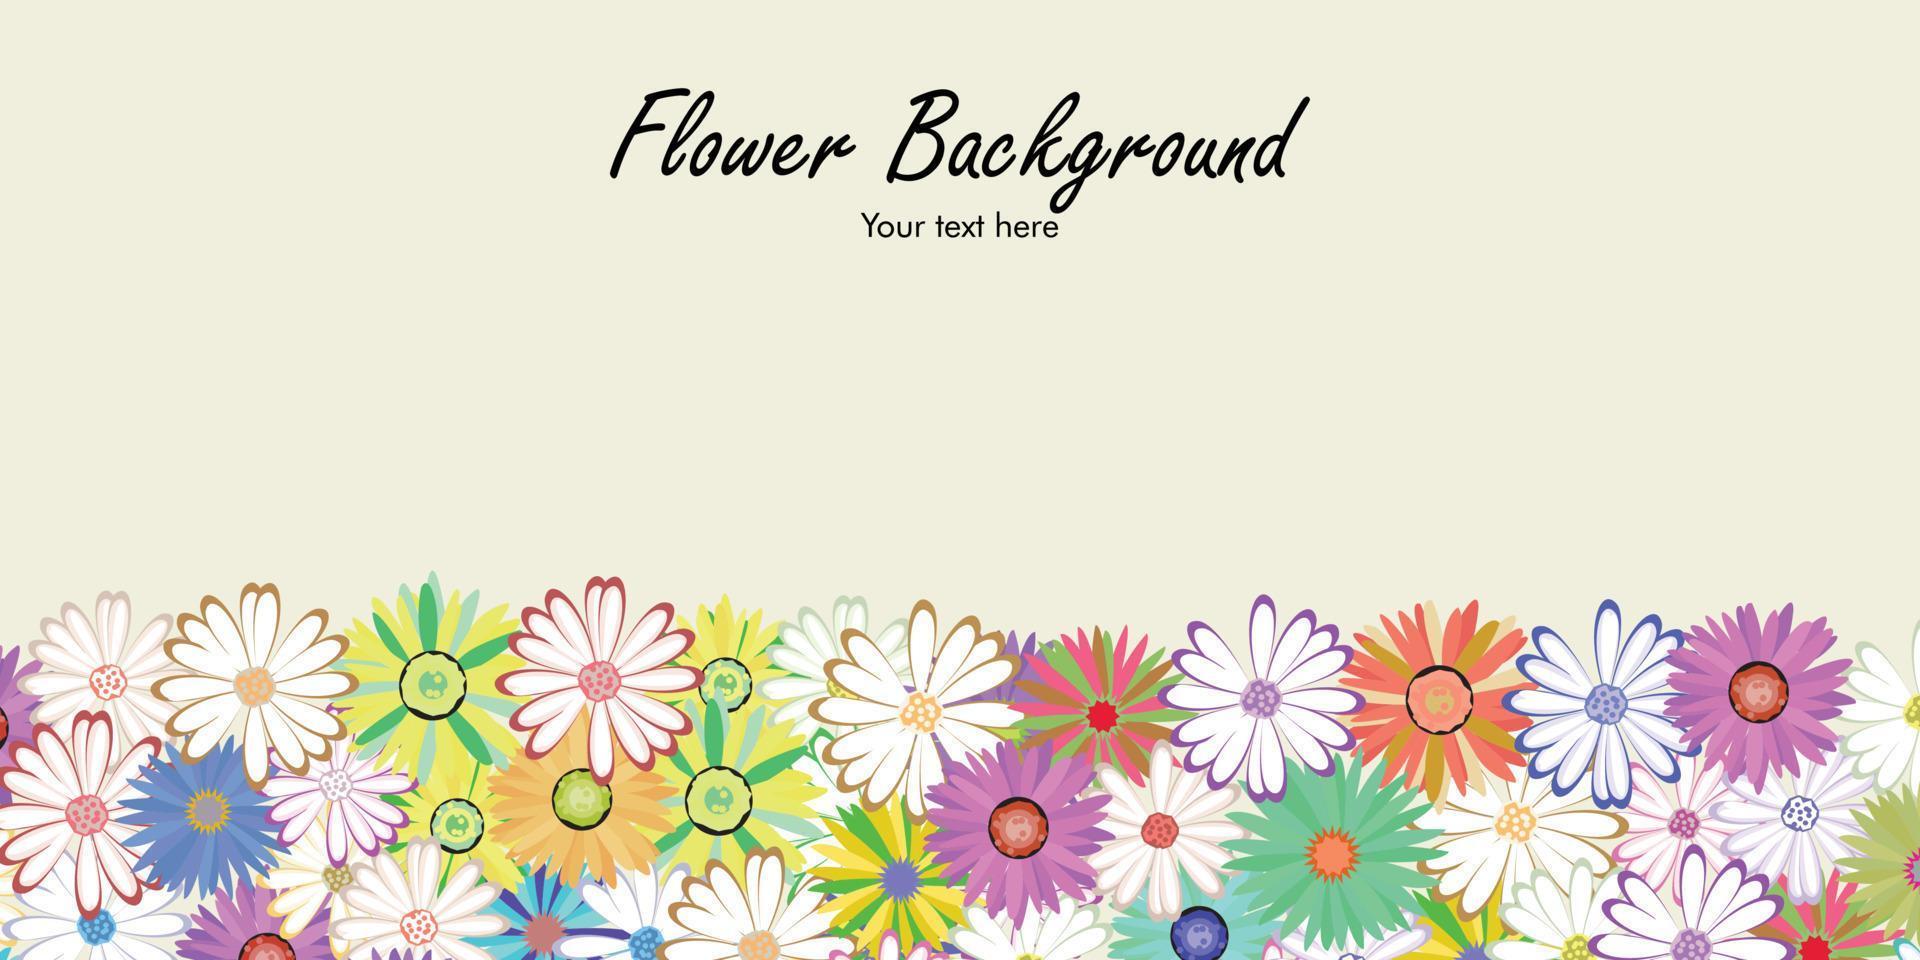 bloem achtergrond met prachtige kleurrijke bloemen. lente op een witte achtergrond vector